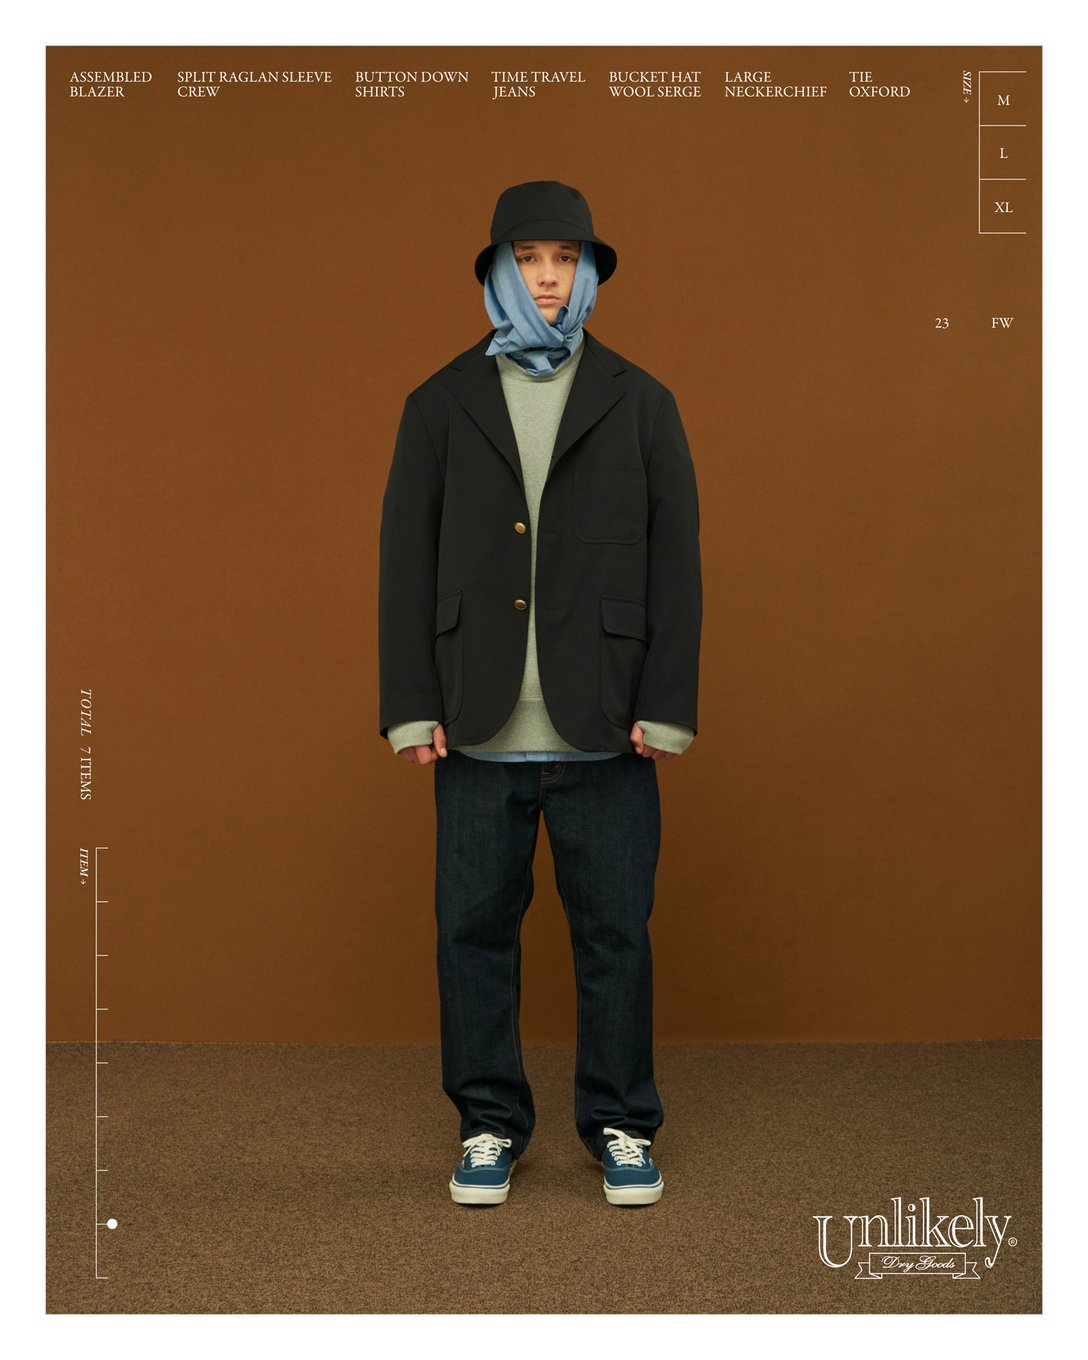 ビームス出身のクリエイティブディレクター中田慎介が新ブランド「アンライクリー」を立ち上げ